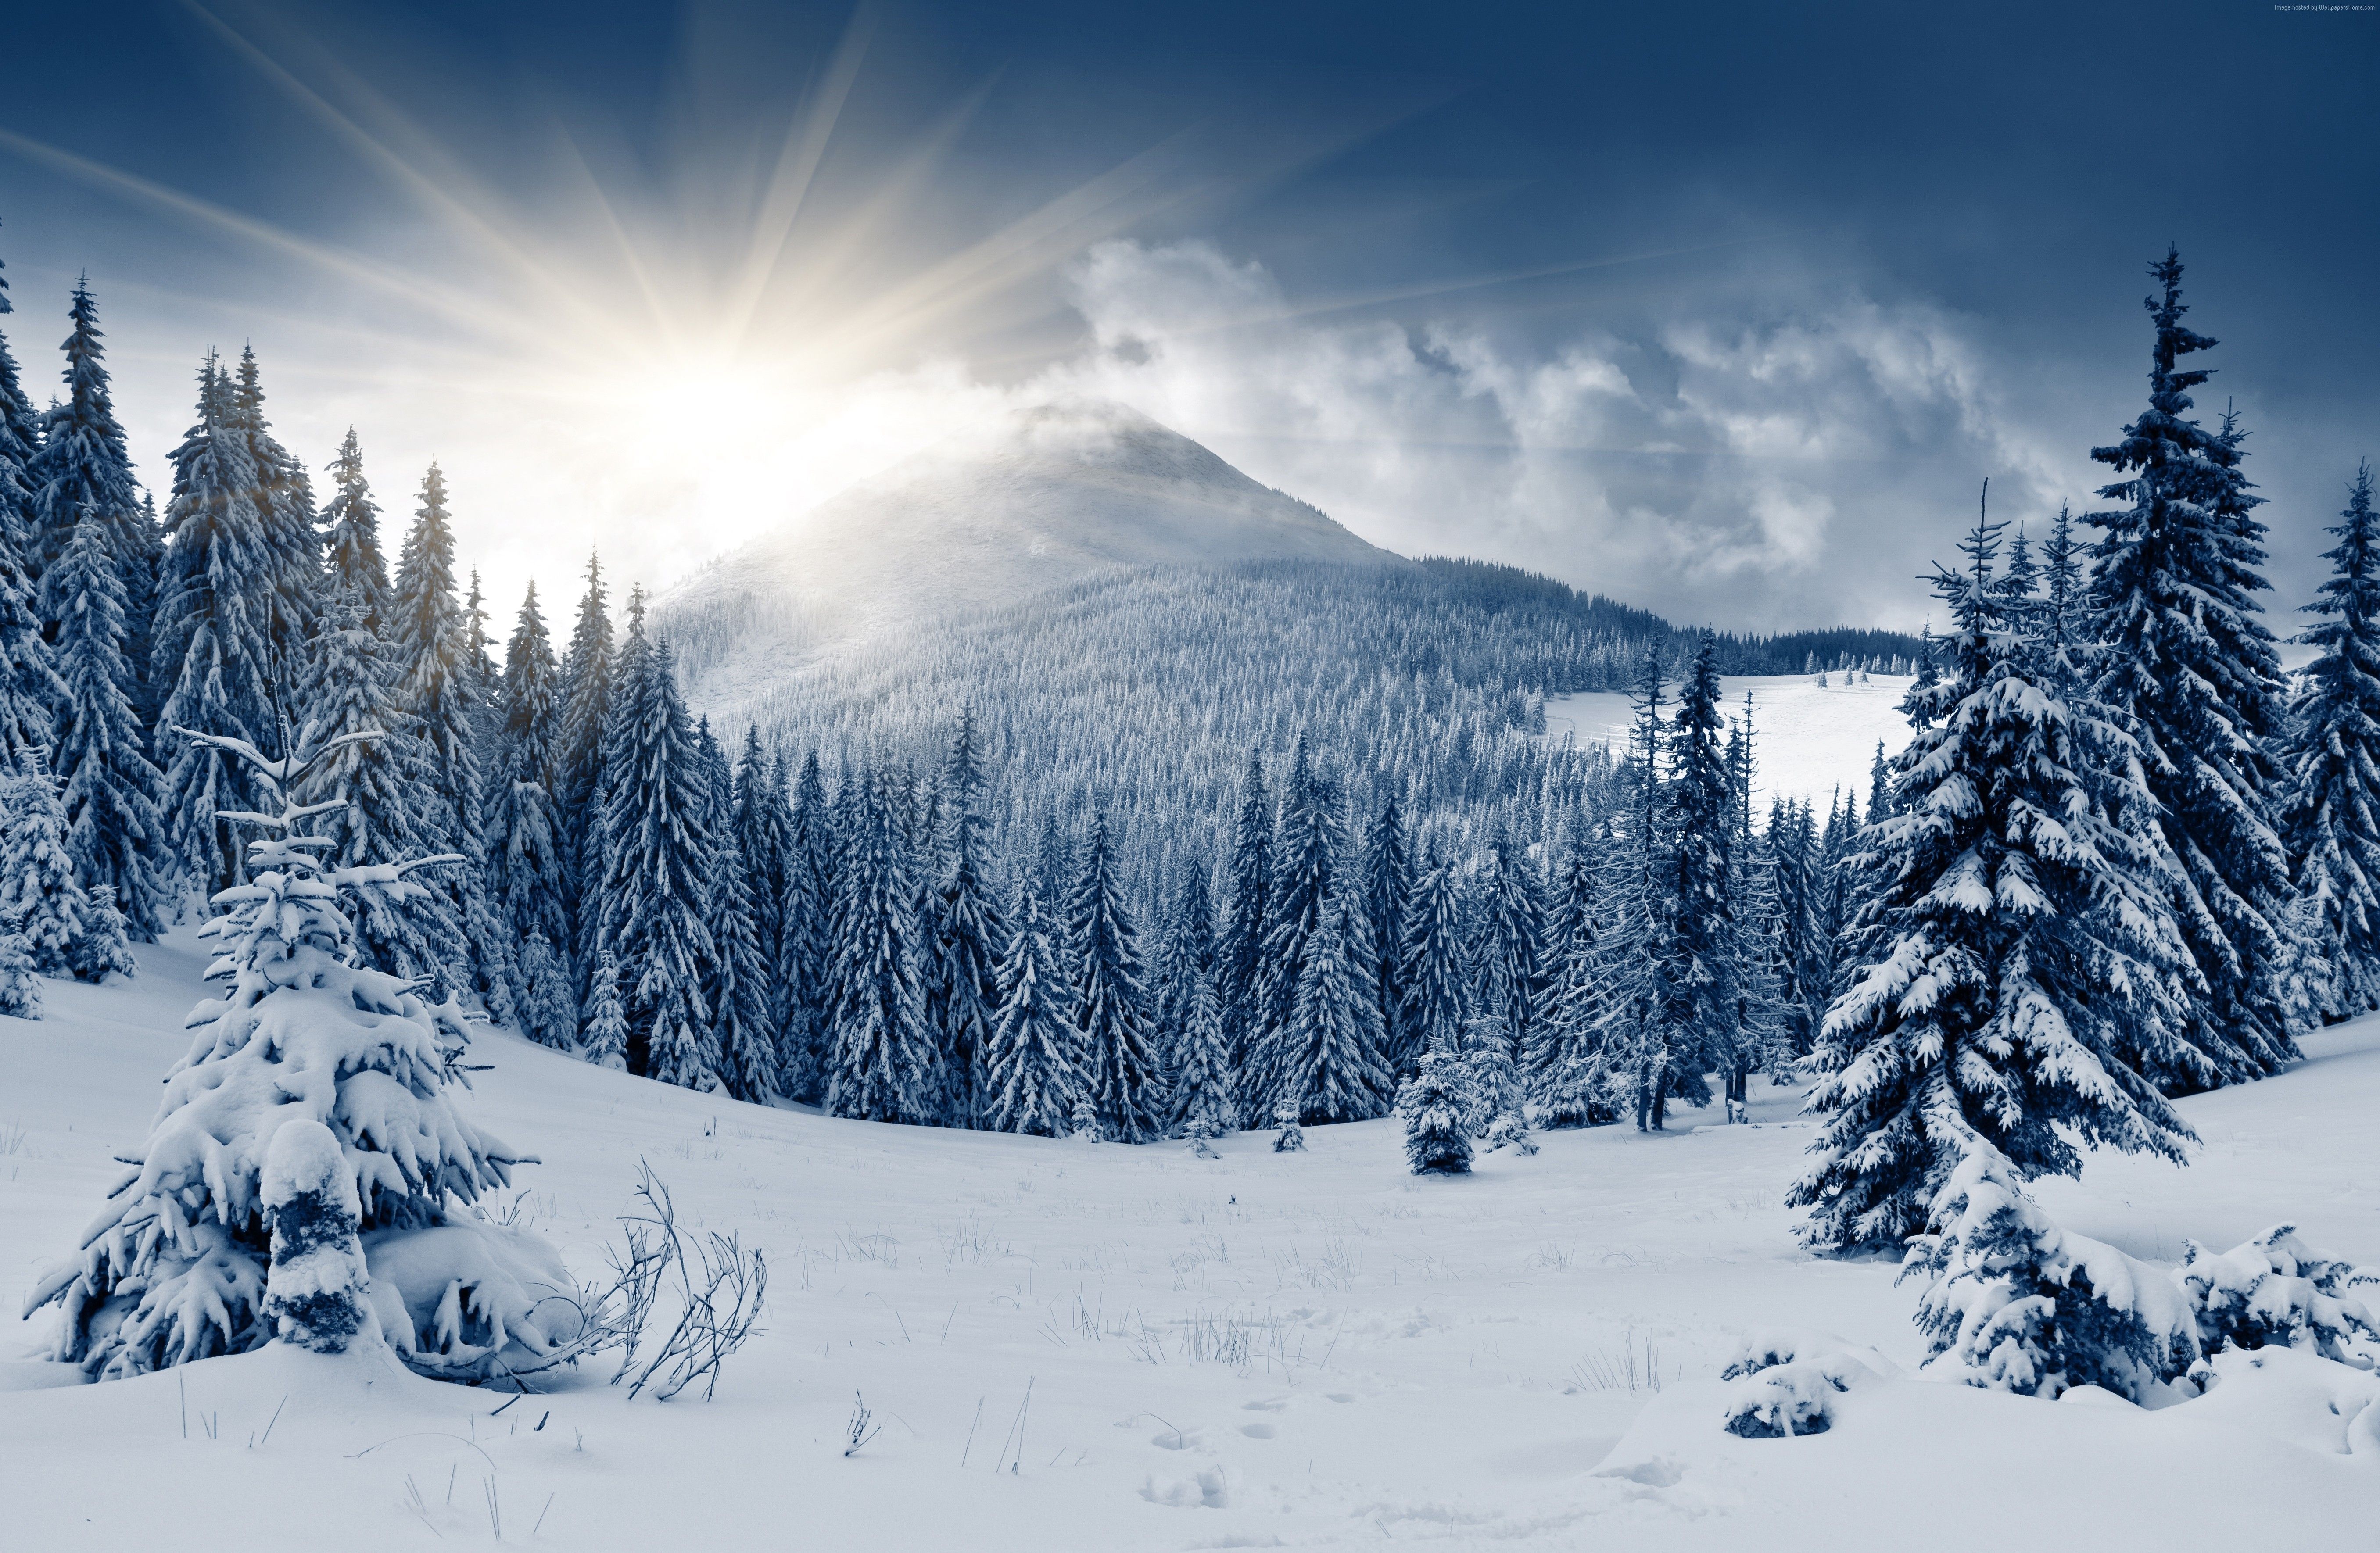 Winter Forest Wallpaper, Nature / Forest: Winter Forest, Mountain, Sun, Snow, Fir Trees. Winter Landscape, Winter Forest, Forest Wallpaper